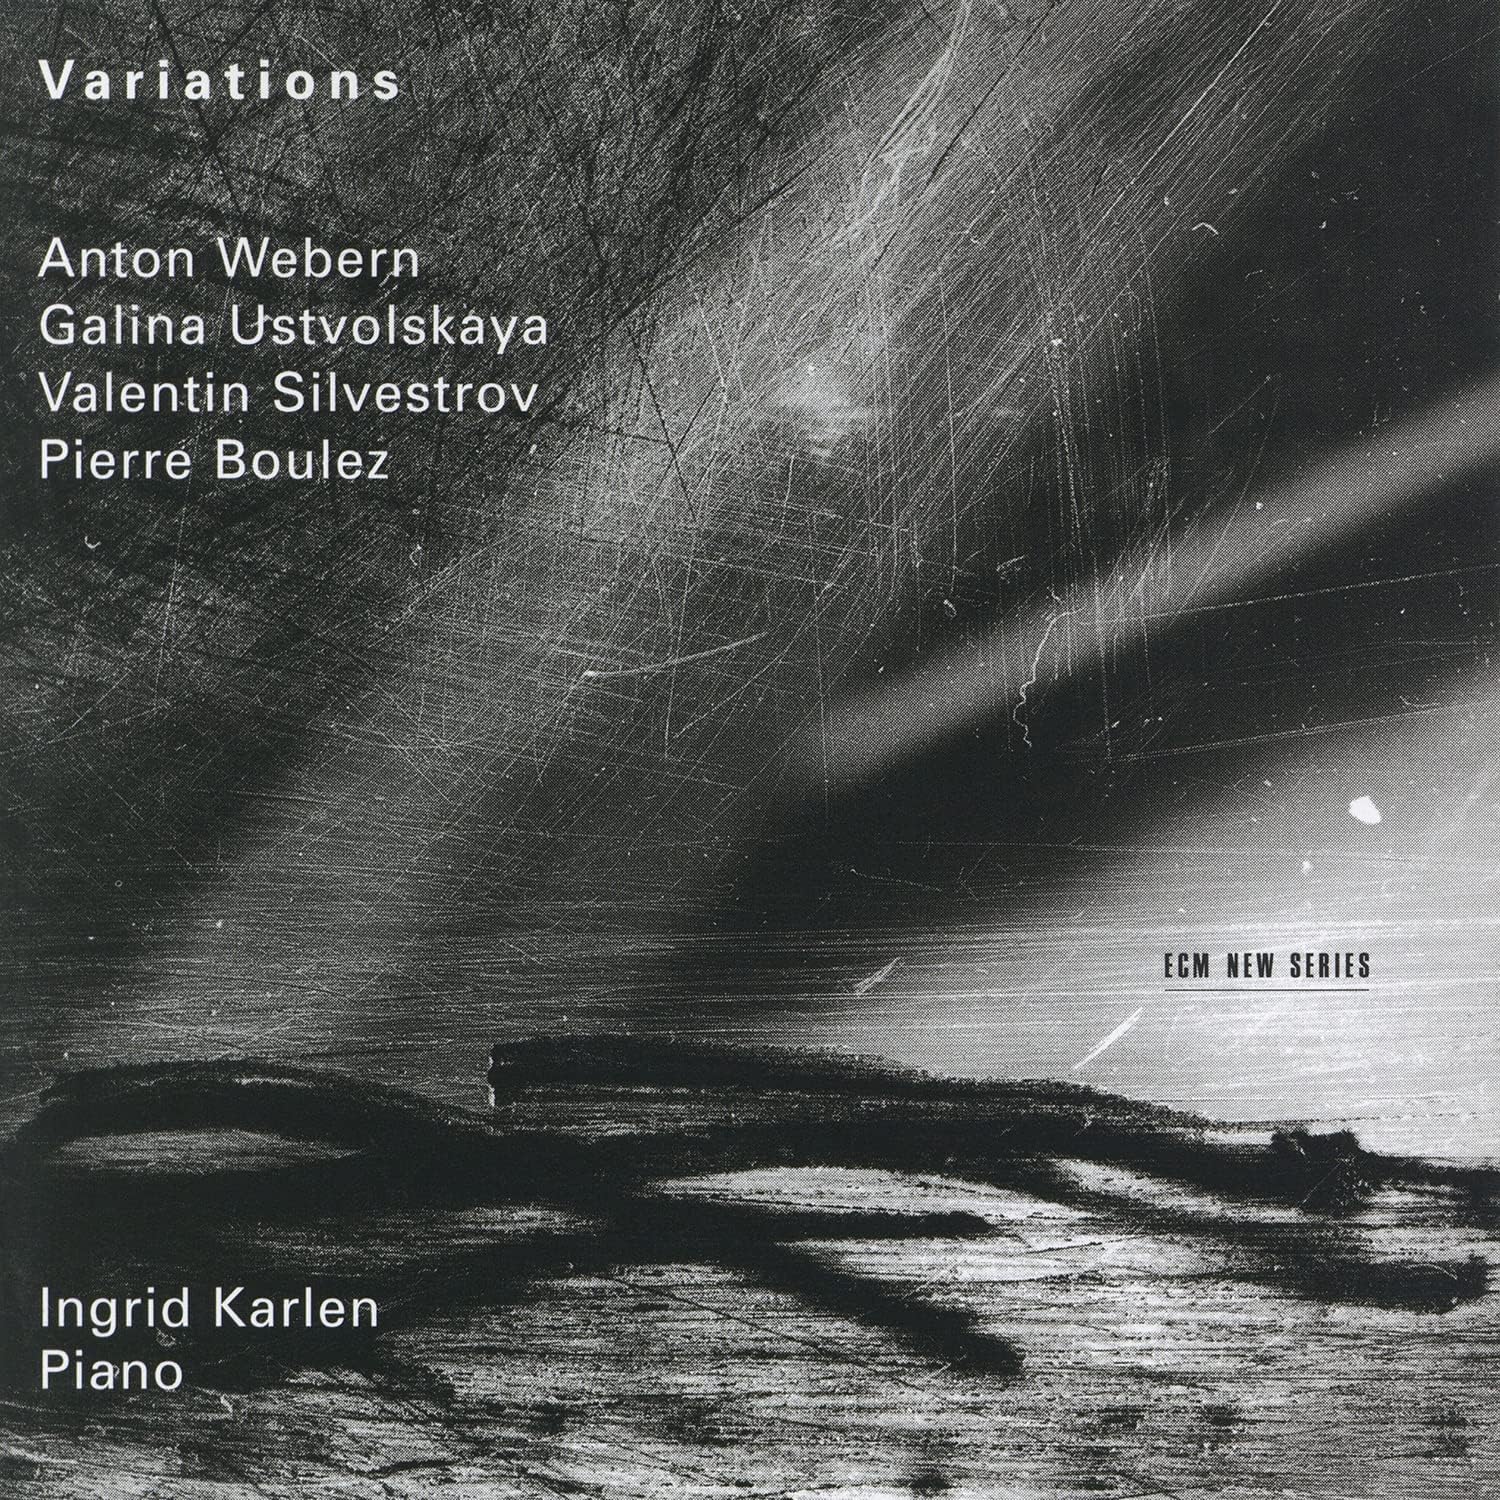 Anton Webern: Variations | Galina Ustvolskaya, Valentin Silvestrov, Pierre Boulez, Ingrid Karlen